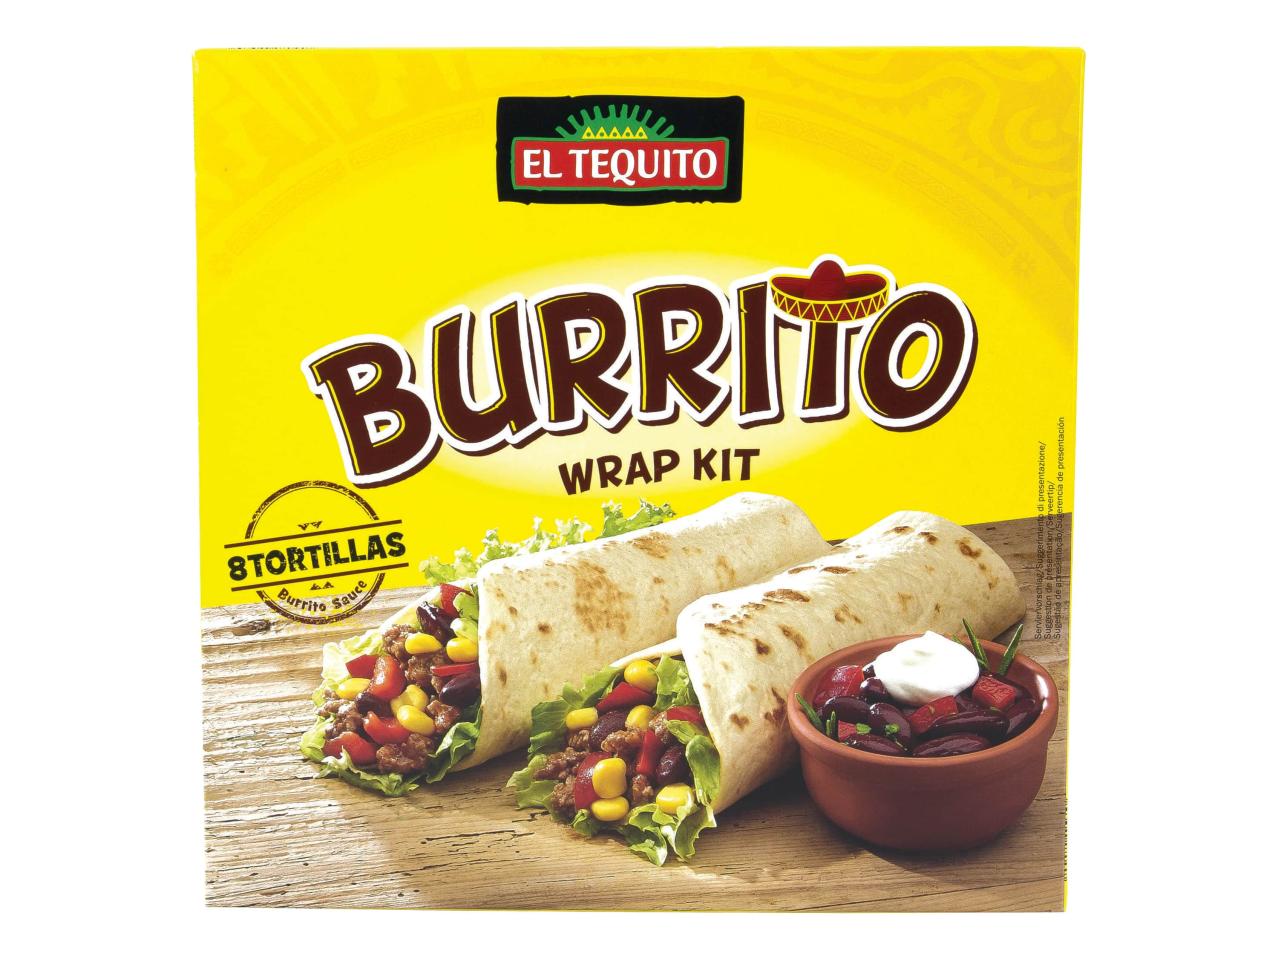 Kit pour burritos